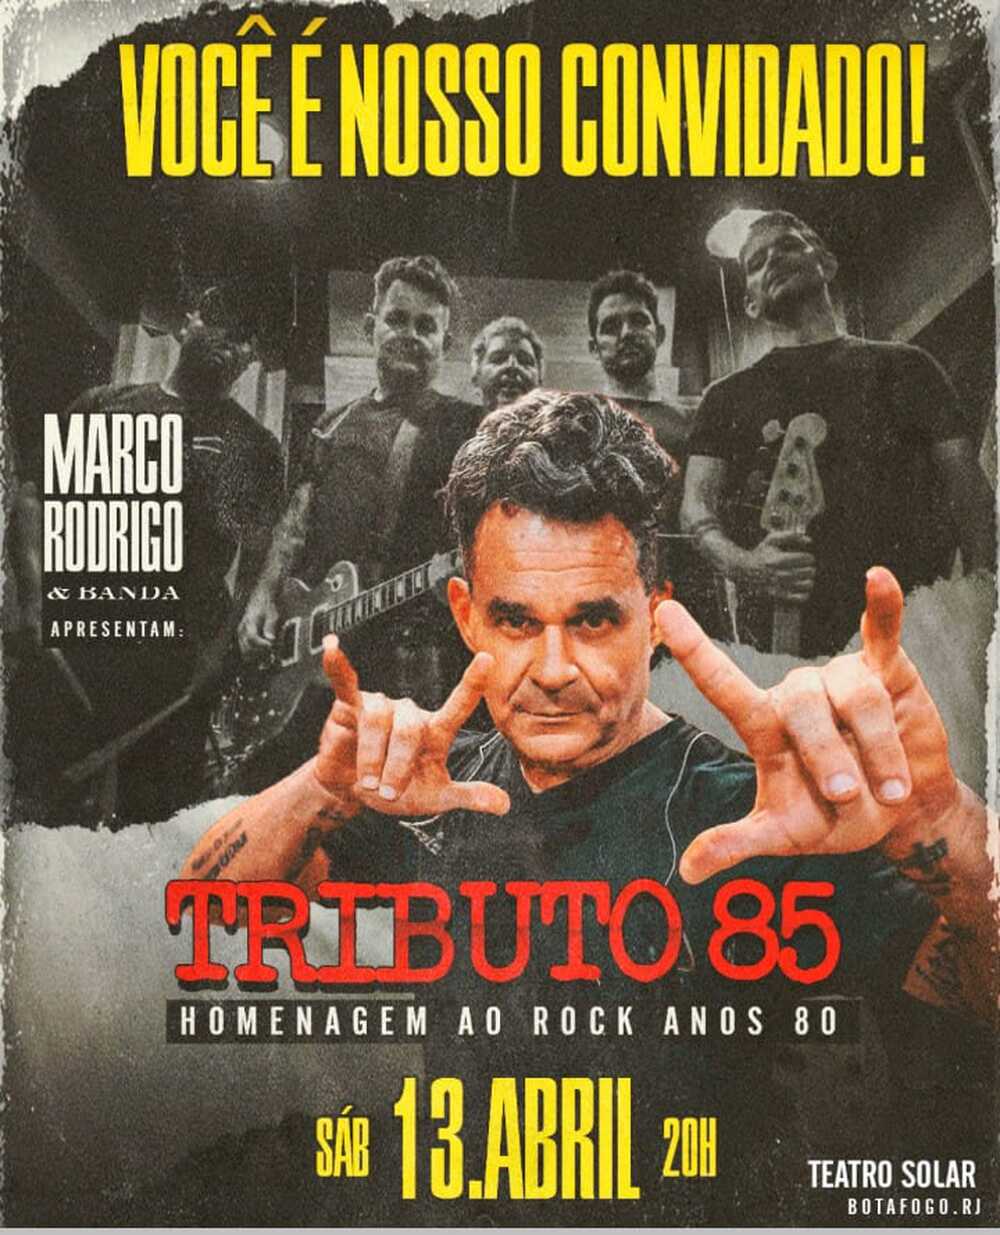 TRIBUTO 85 Homenagem ao ROCK Anos 80 traz apresentação única ao Rio de Janeiro